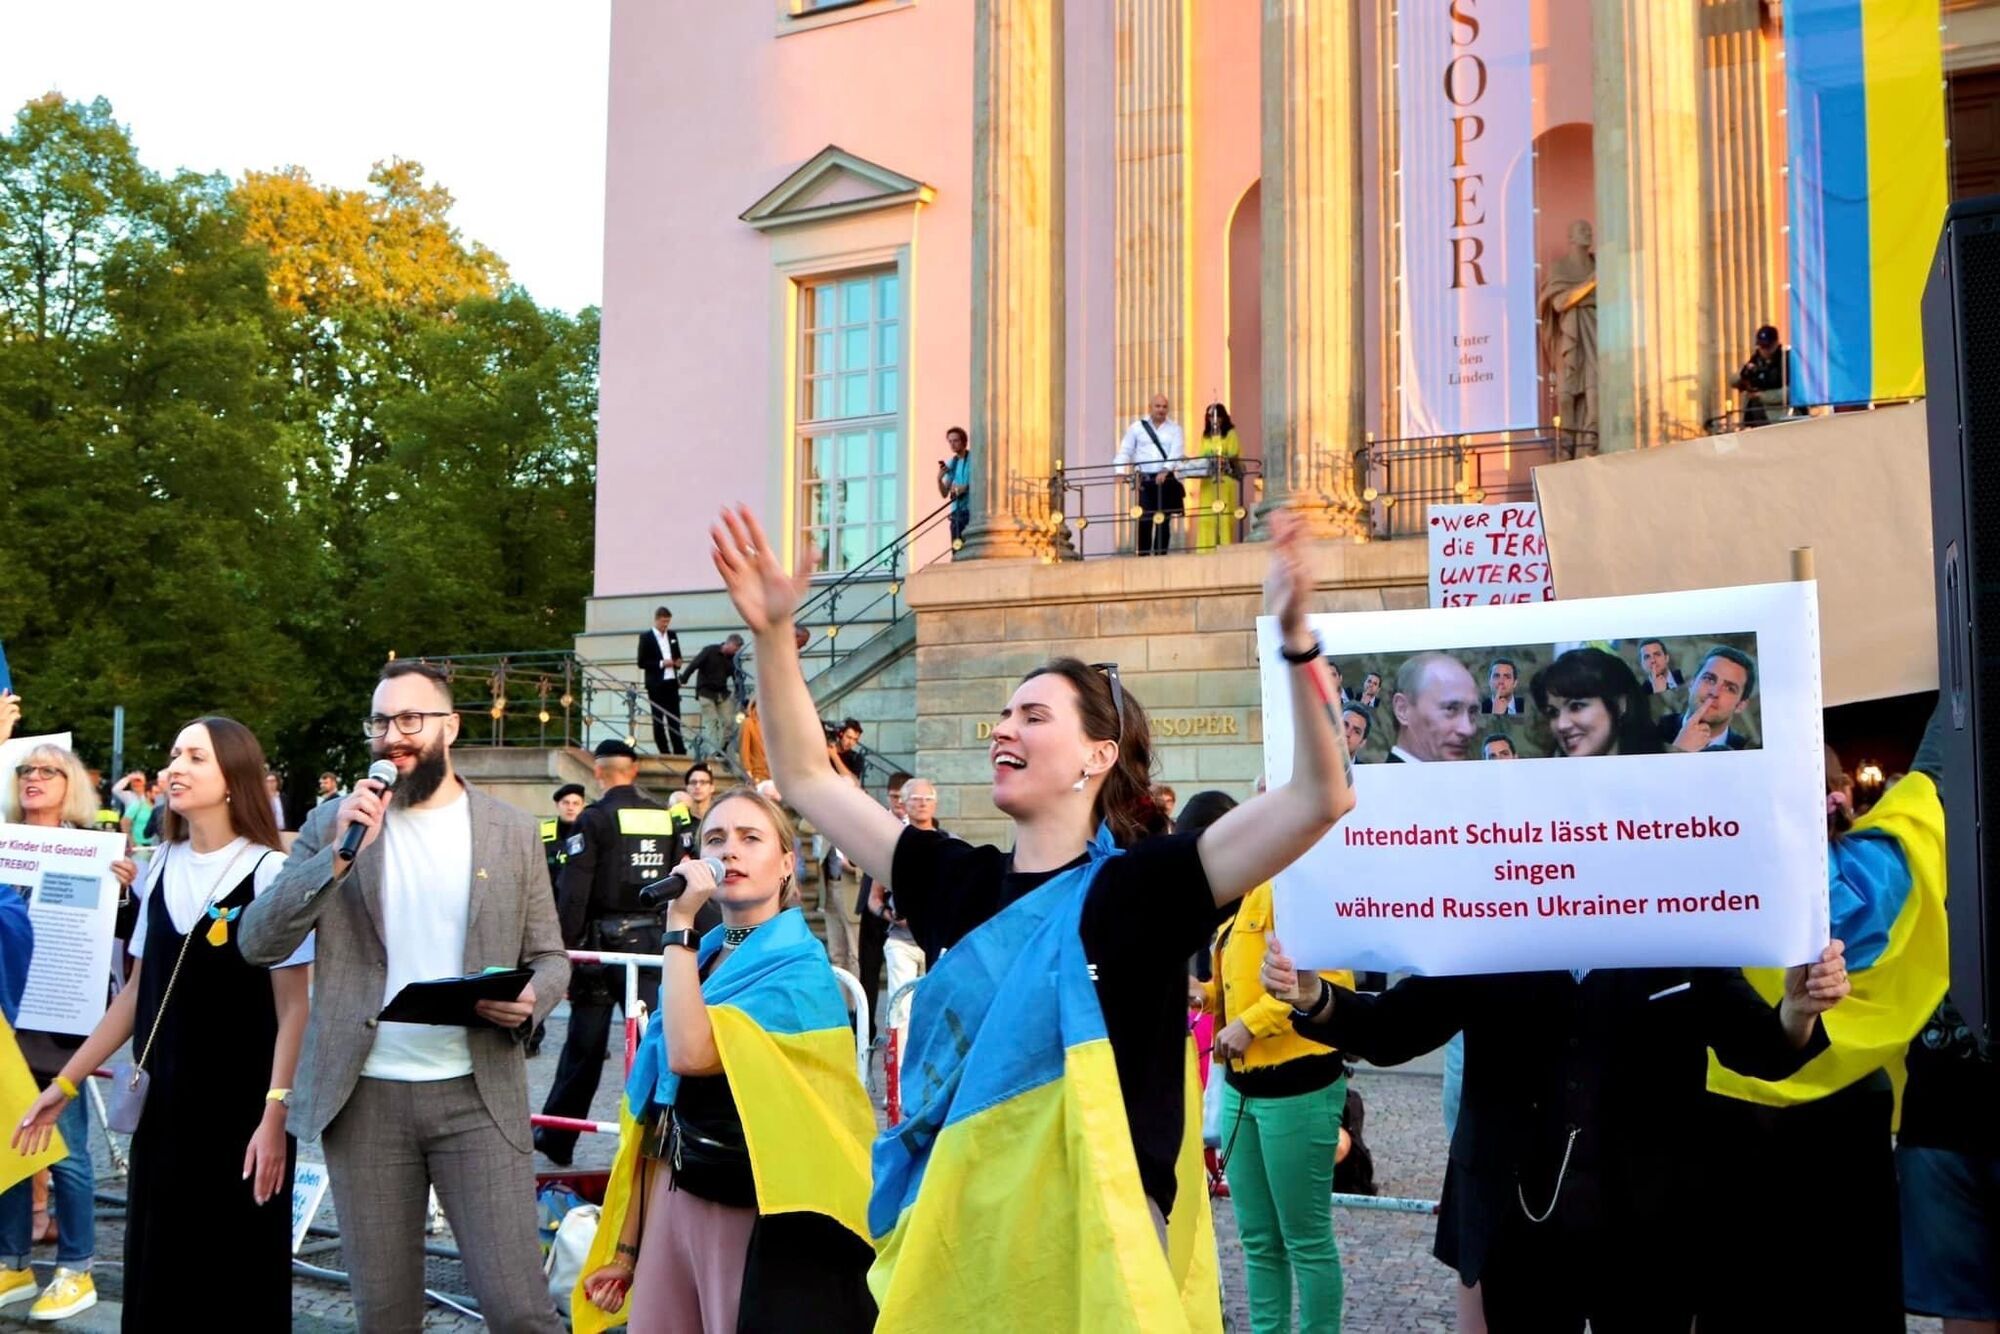 Украинских активистов в Германии преследуют друзья Анны Нетребко: немецкий дирижер подал на протестующих в суд